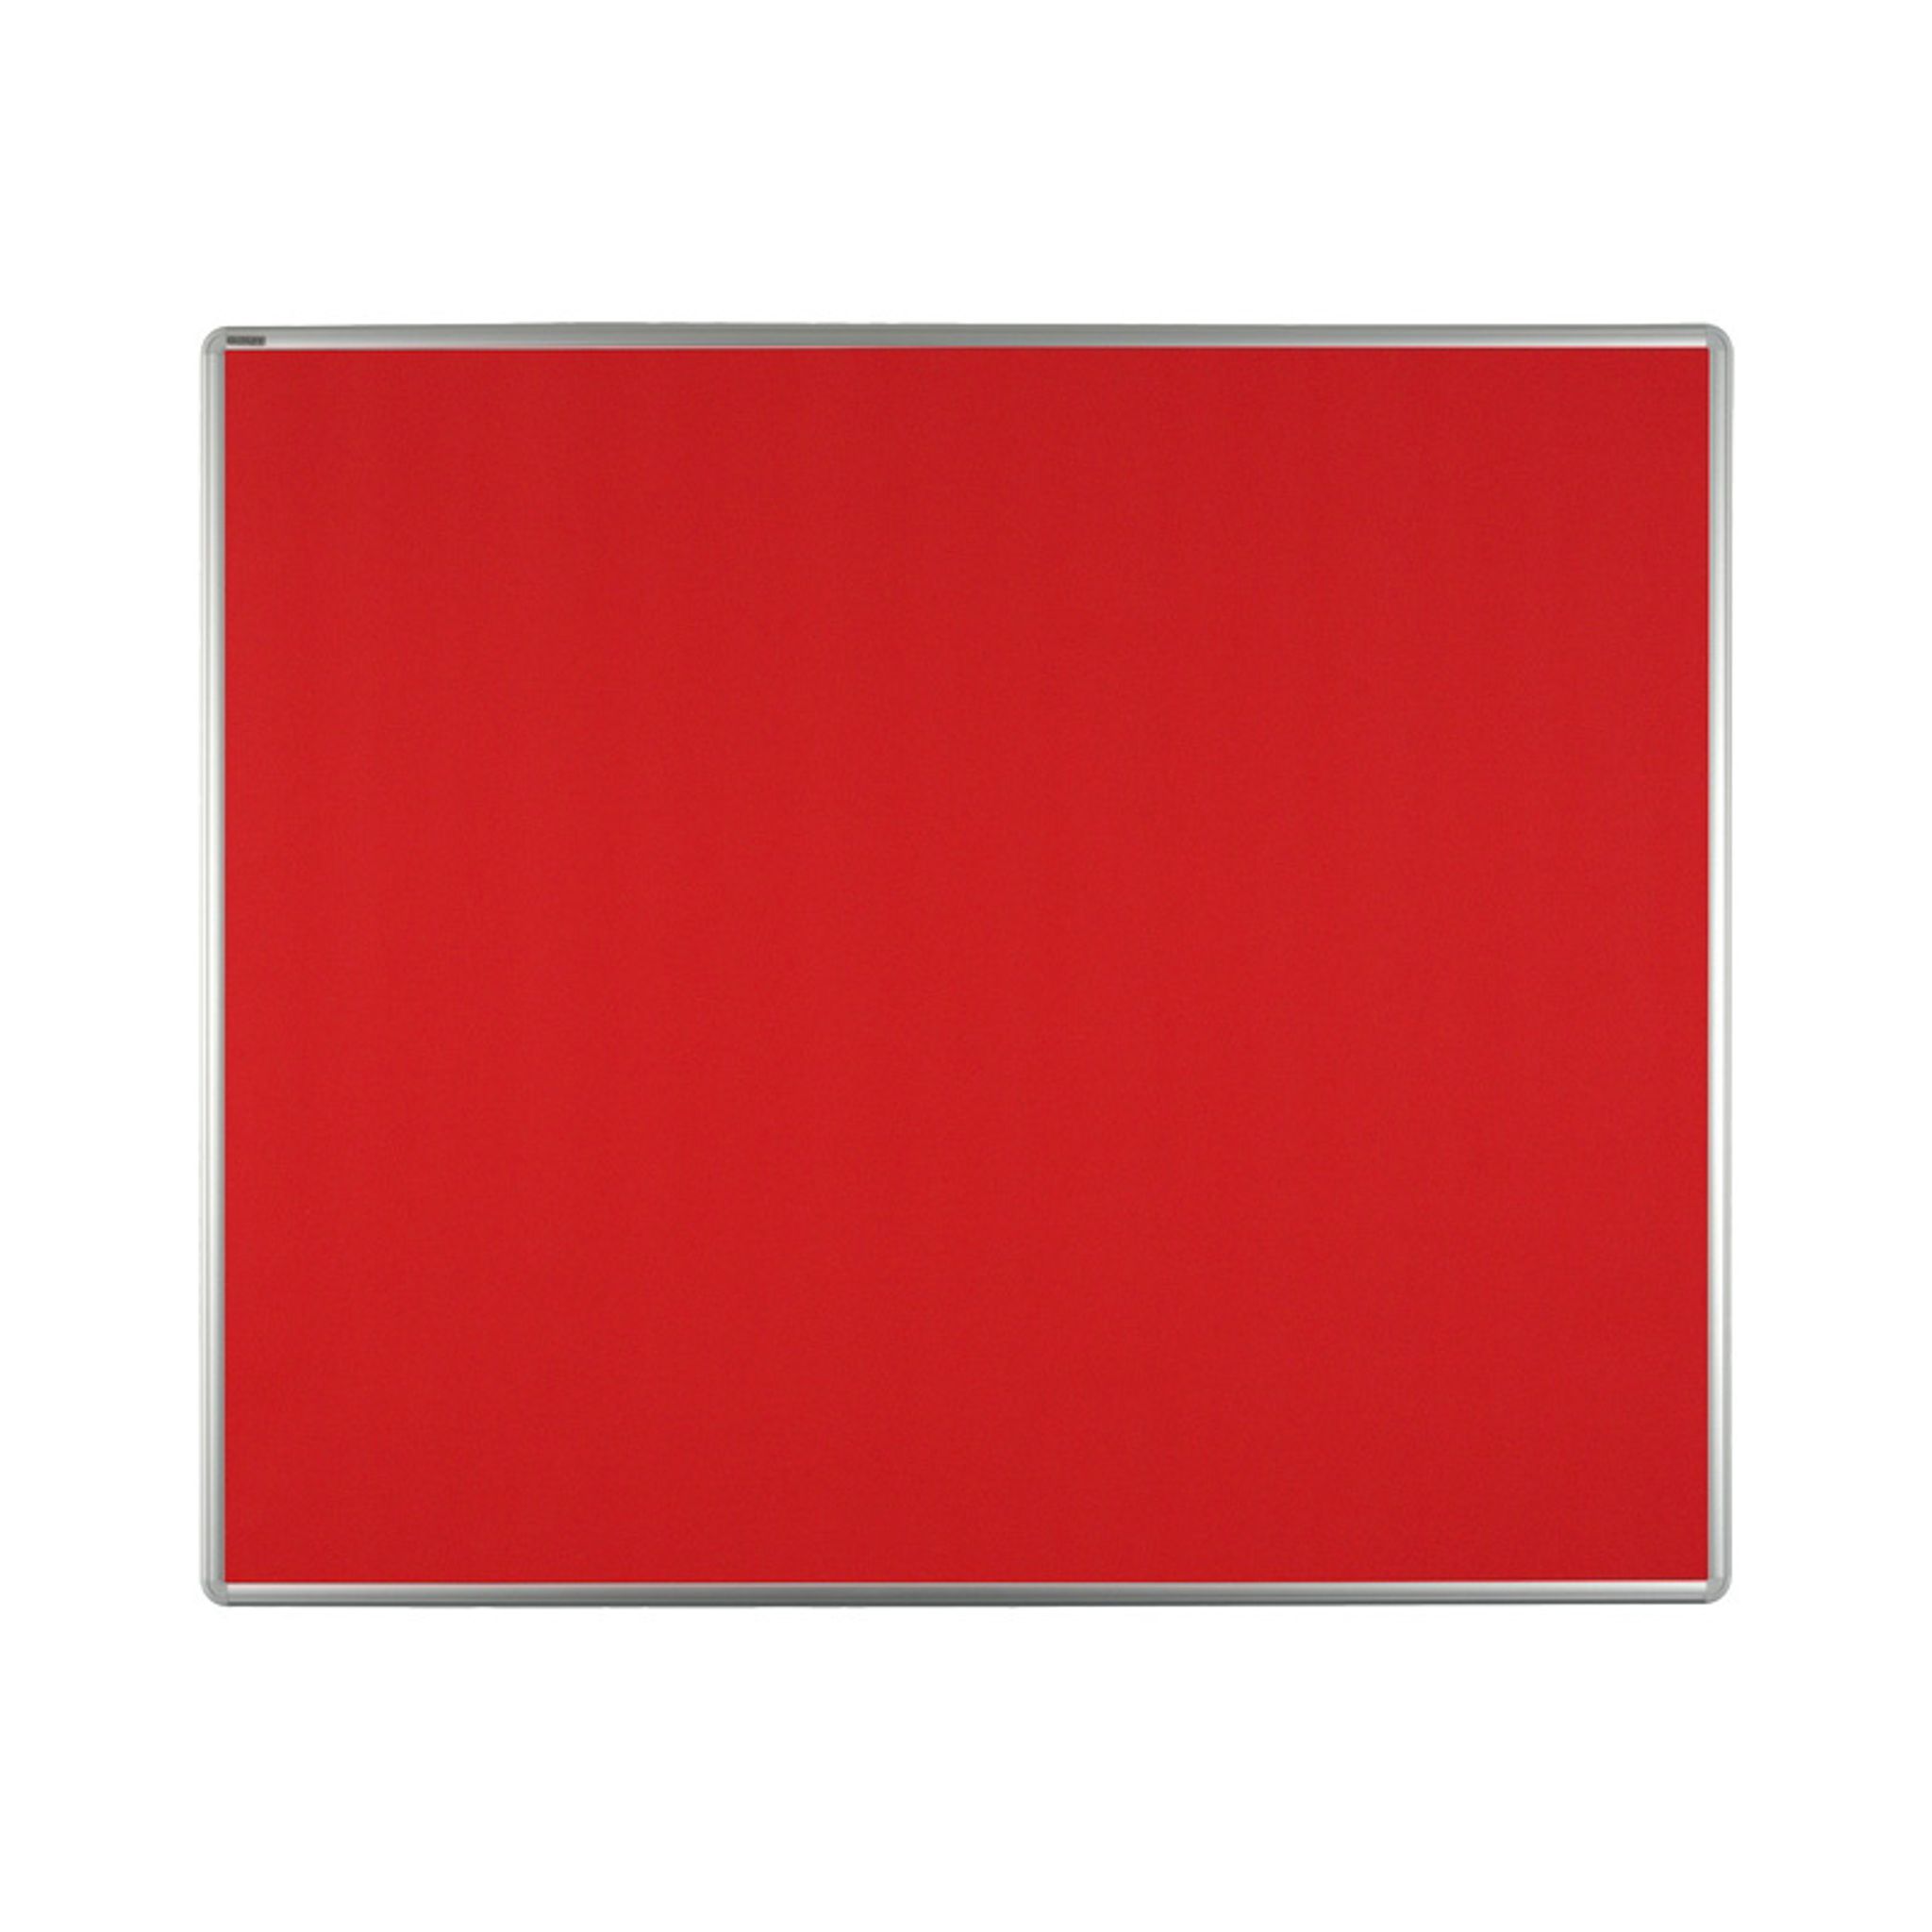 Tablica tekstylna ekoTAB w aluminiowej ramie 1200 x 900 mm, czerwona